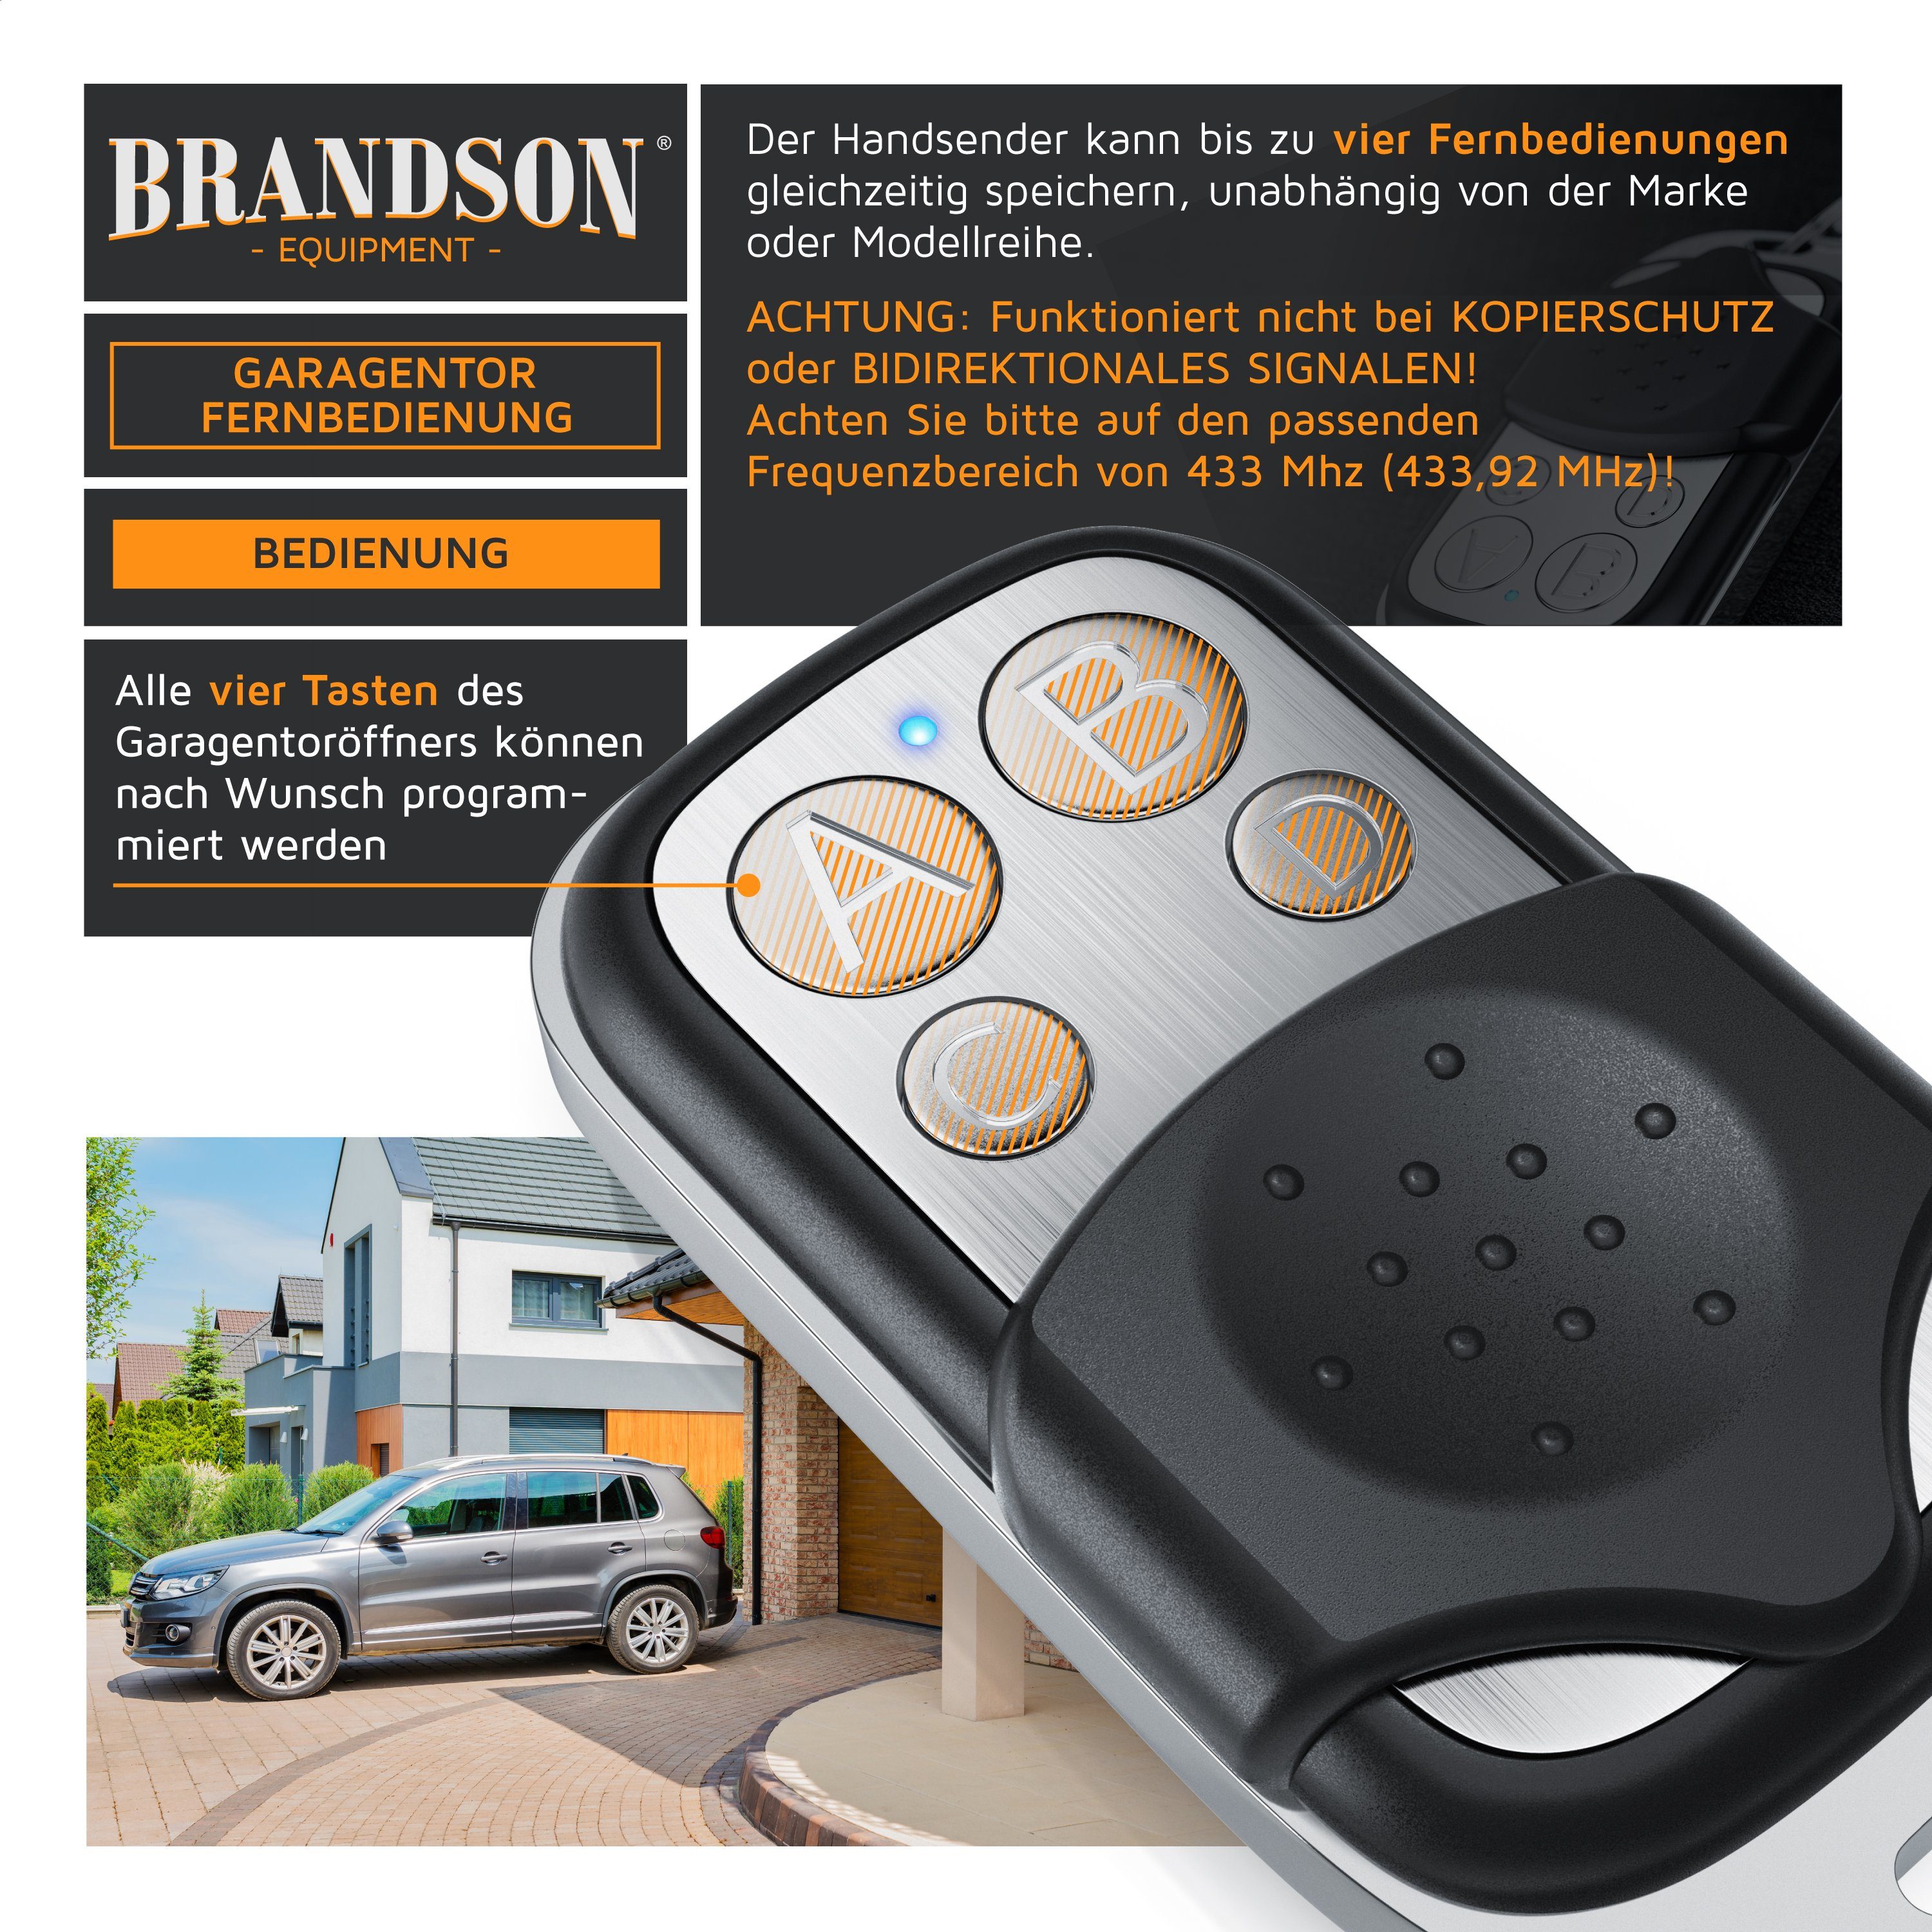 Brandson Tor-Funksteuerung, für Garagentorantrieb, Torantrieb,  Garagentoröffner 433 MHz selbstlernend - Universal Fernbedienung -  Handsender – 4 Tasten - Funk - Klonen Duplikator – mit Schlüsselanhänger